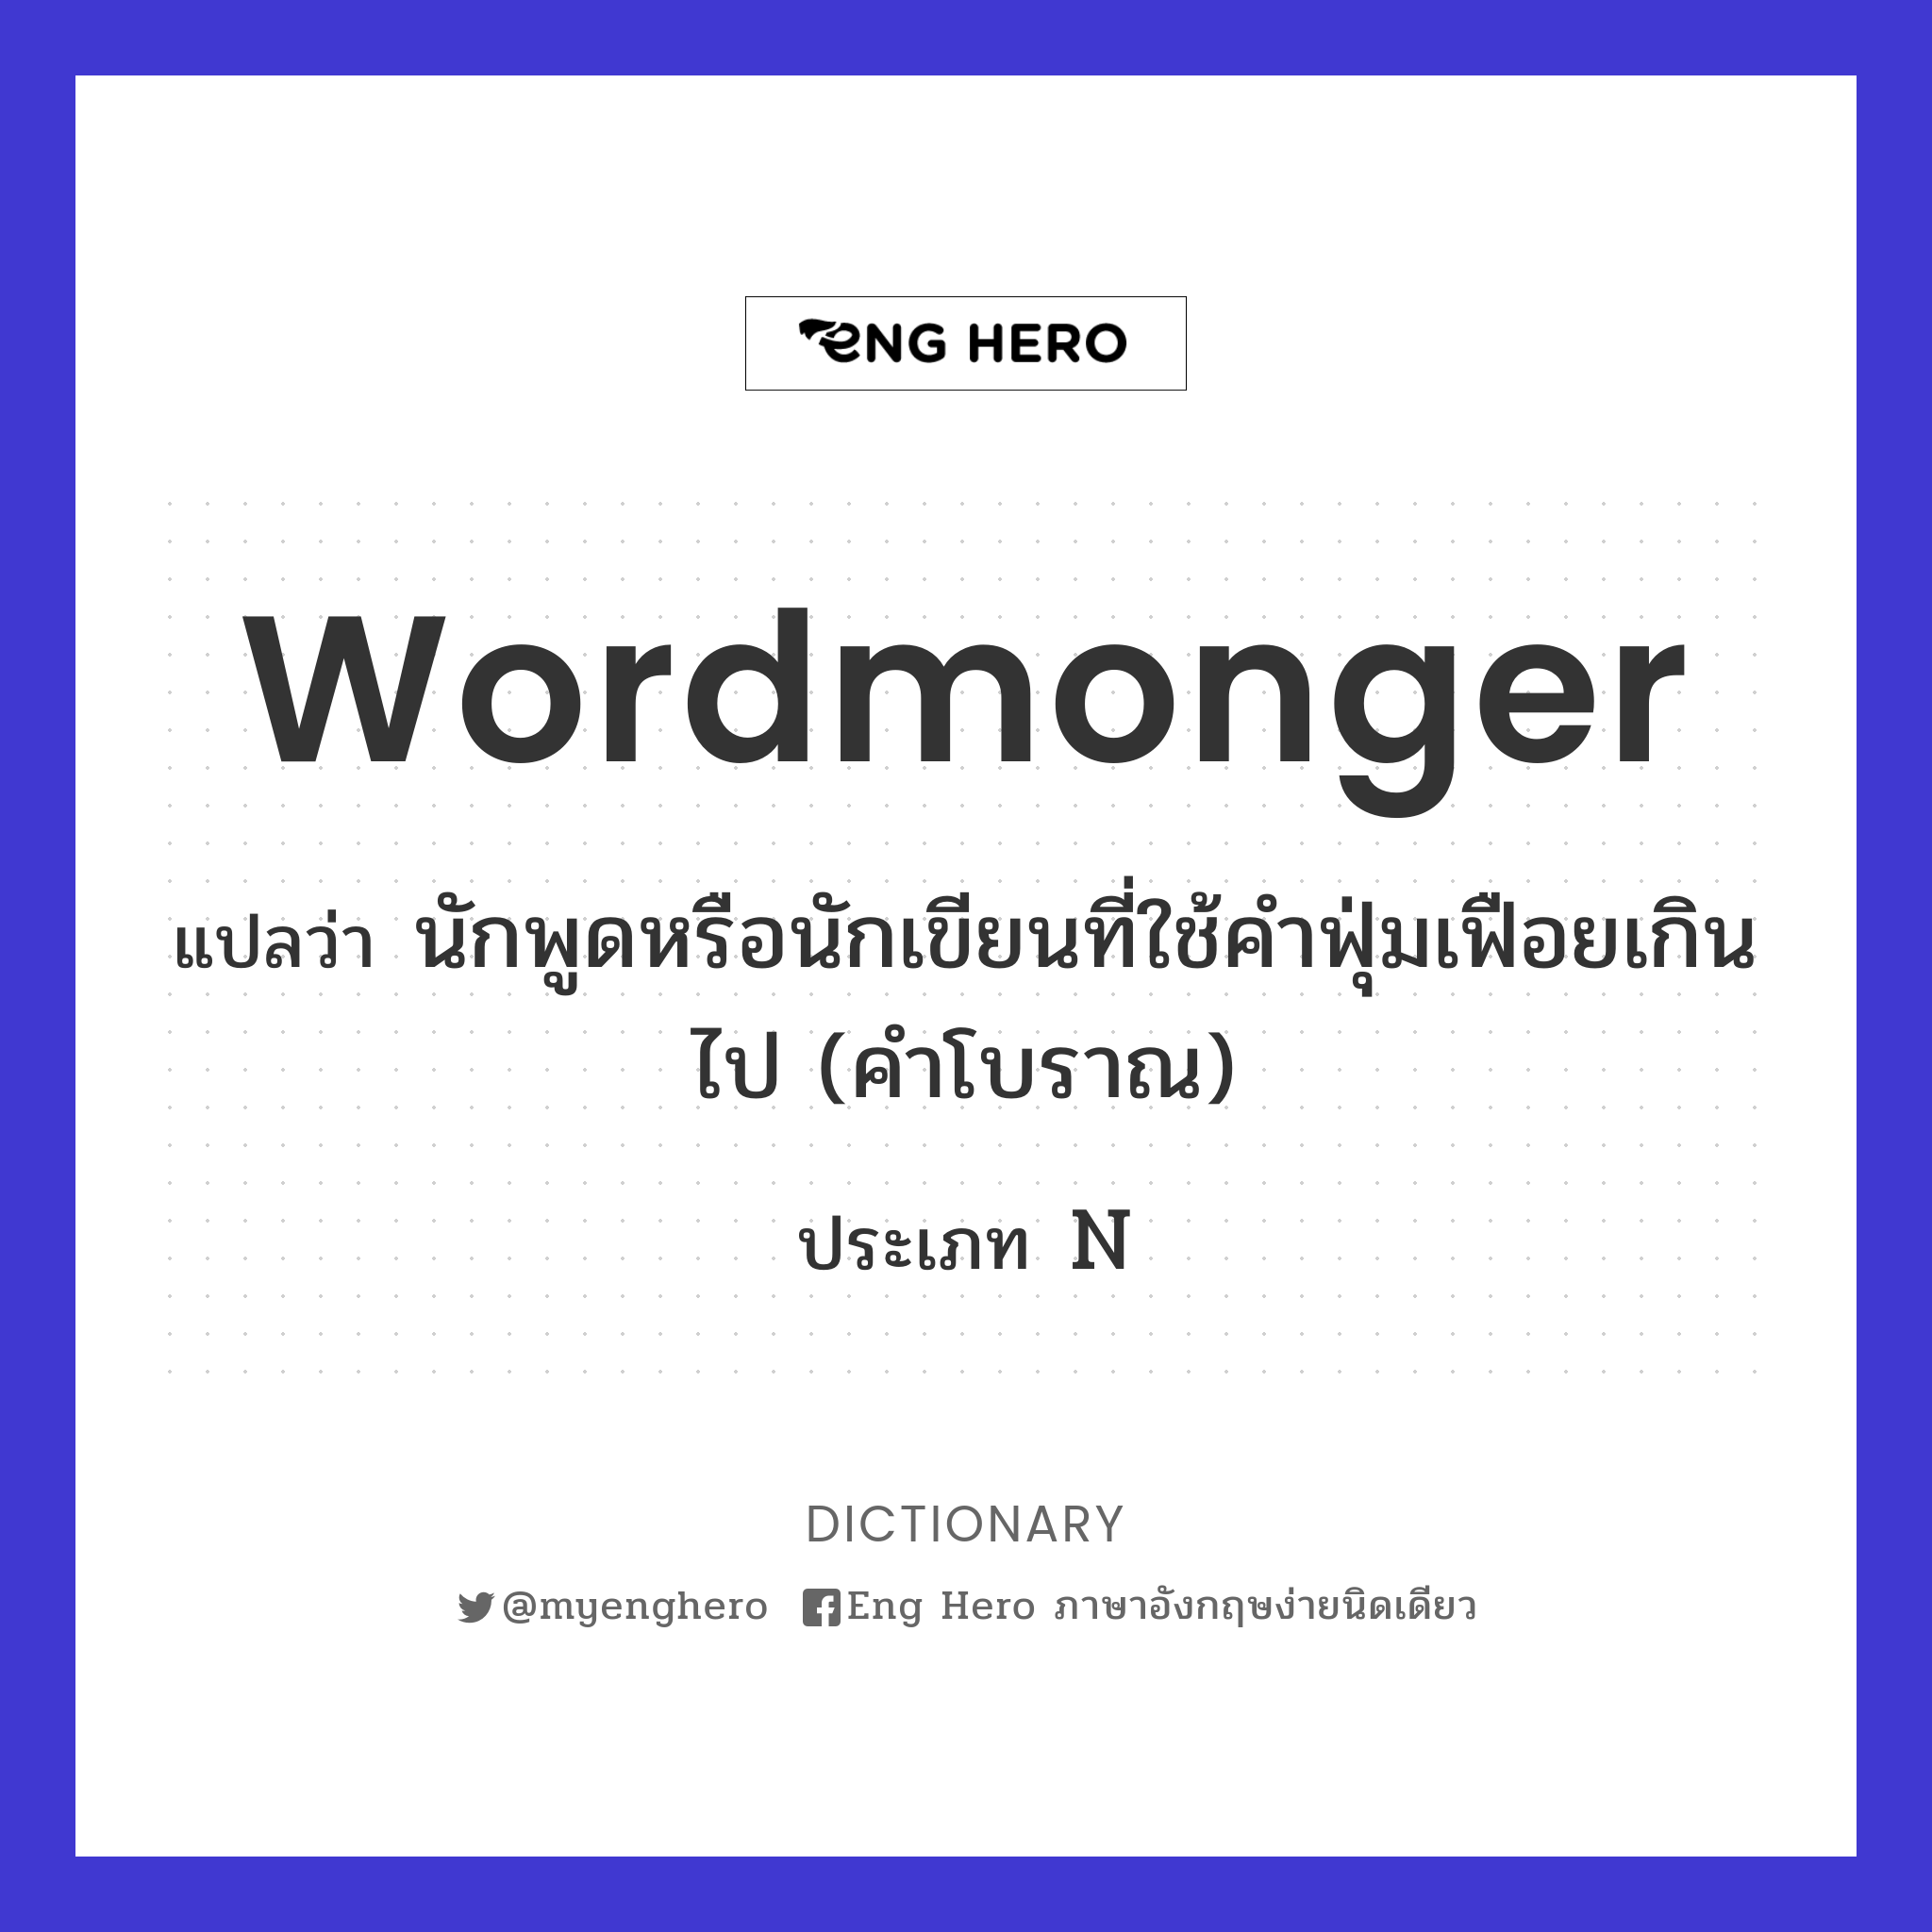 wordmonger